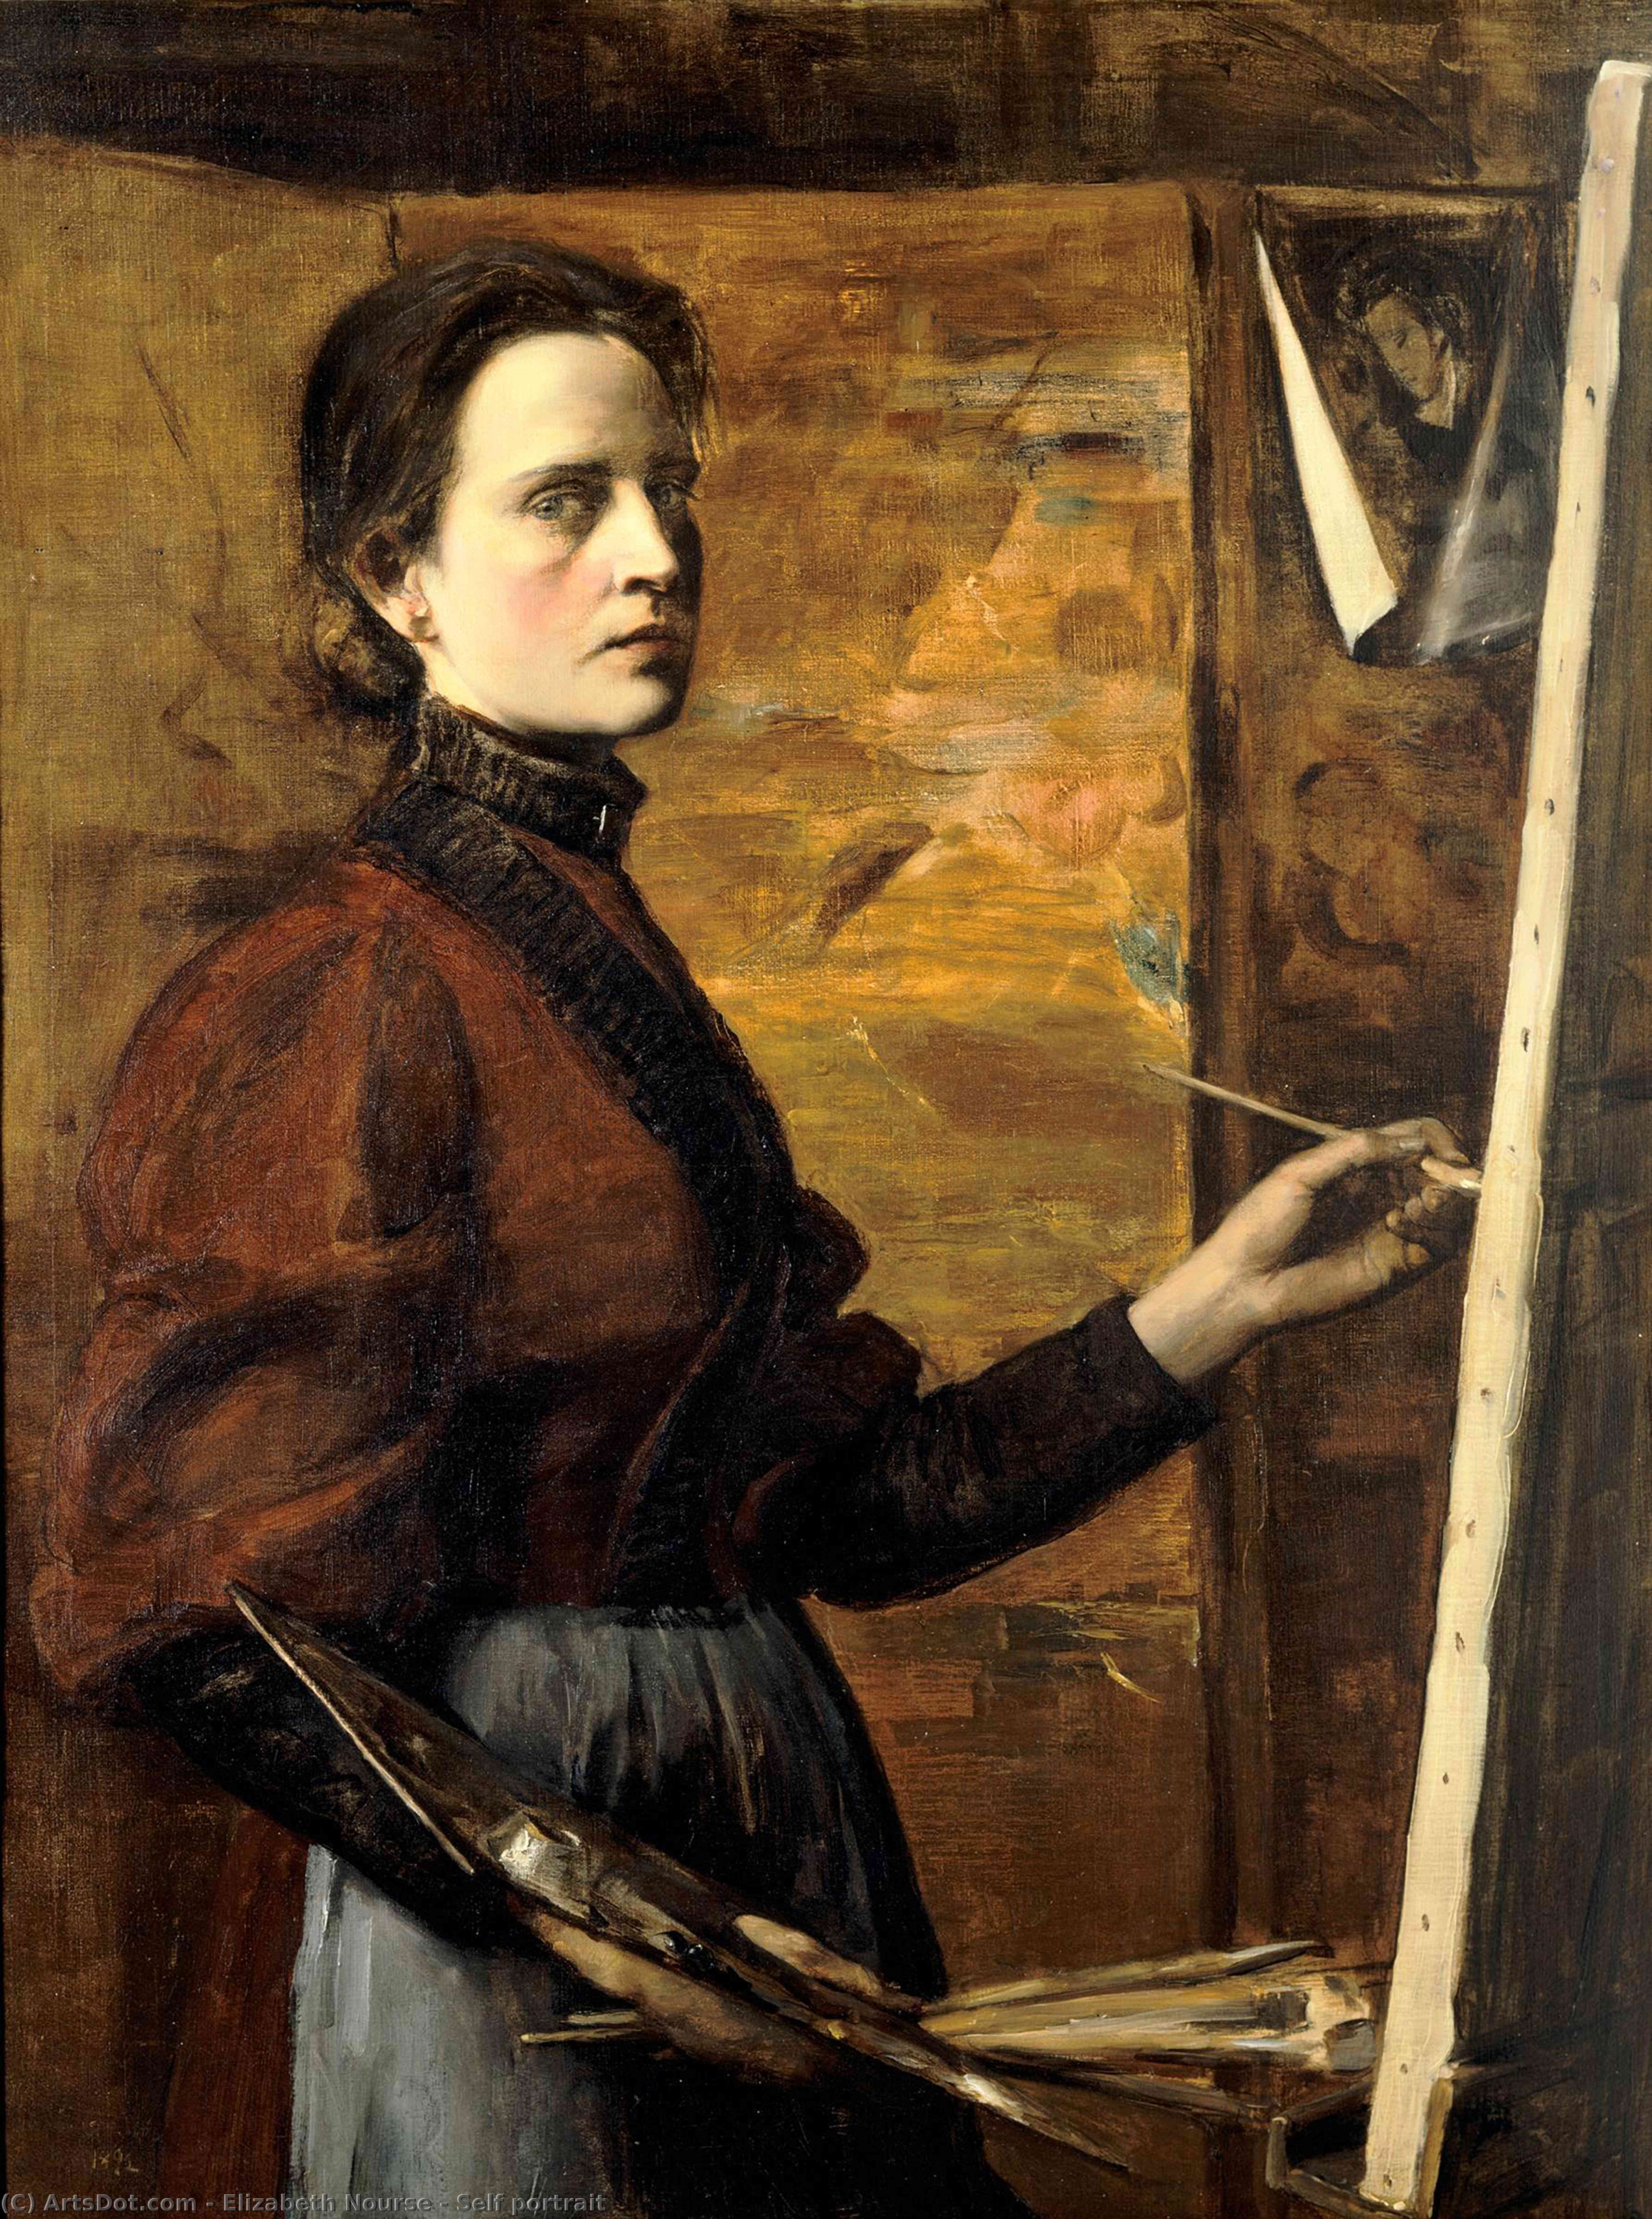 WikiOO.org - Encyclopedia of Fine Arts - Målning, konstverk Elizabeth Nourse - Self portrait